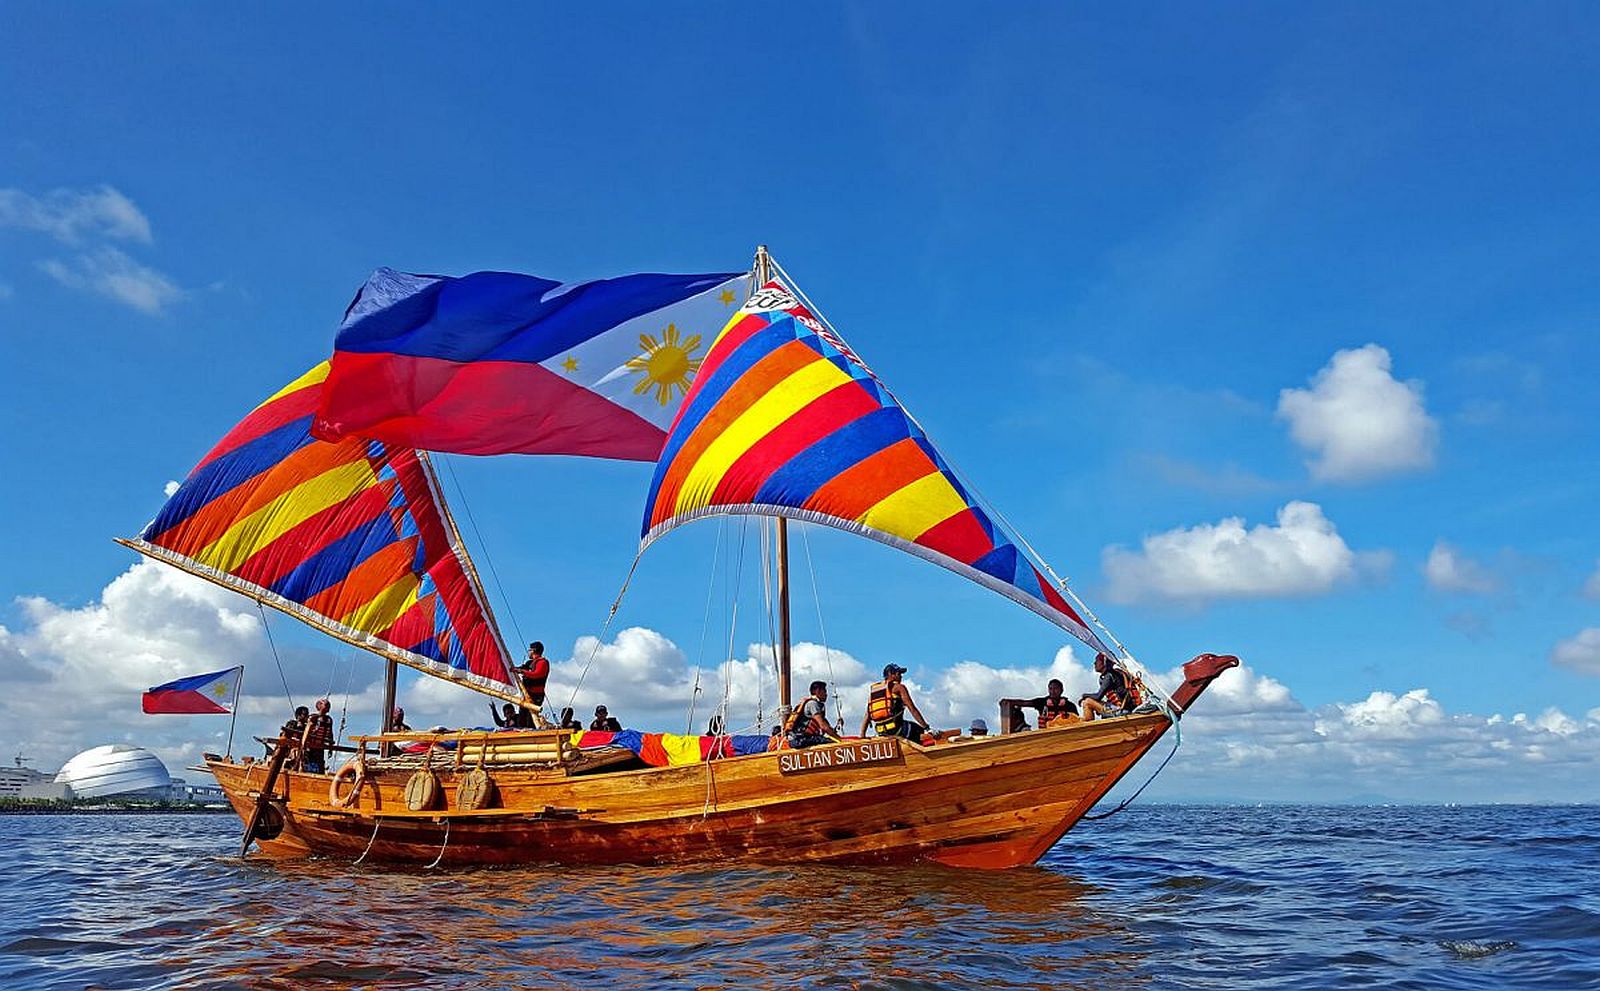 PHILIPPINEN REISEN - ORTE - MINDANAO - AGUSAN DEL NORTE - Touristische Ortsbeschreibung für die Stadt Butuan